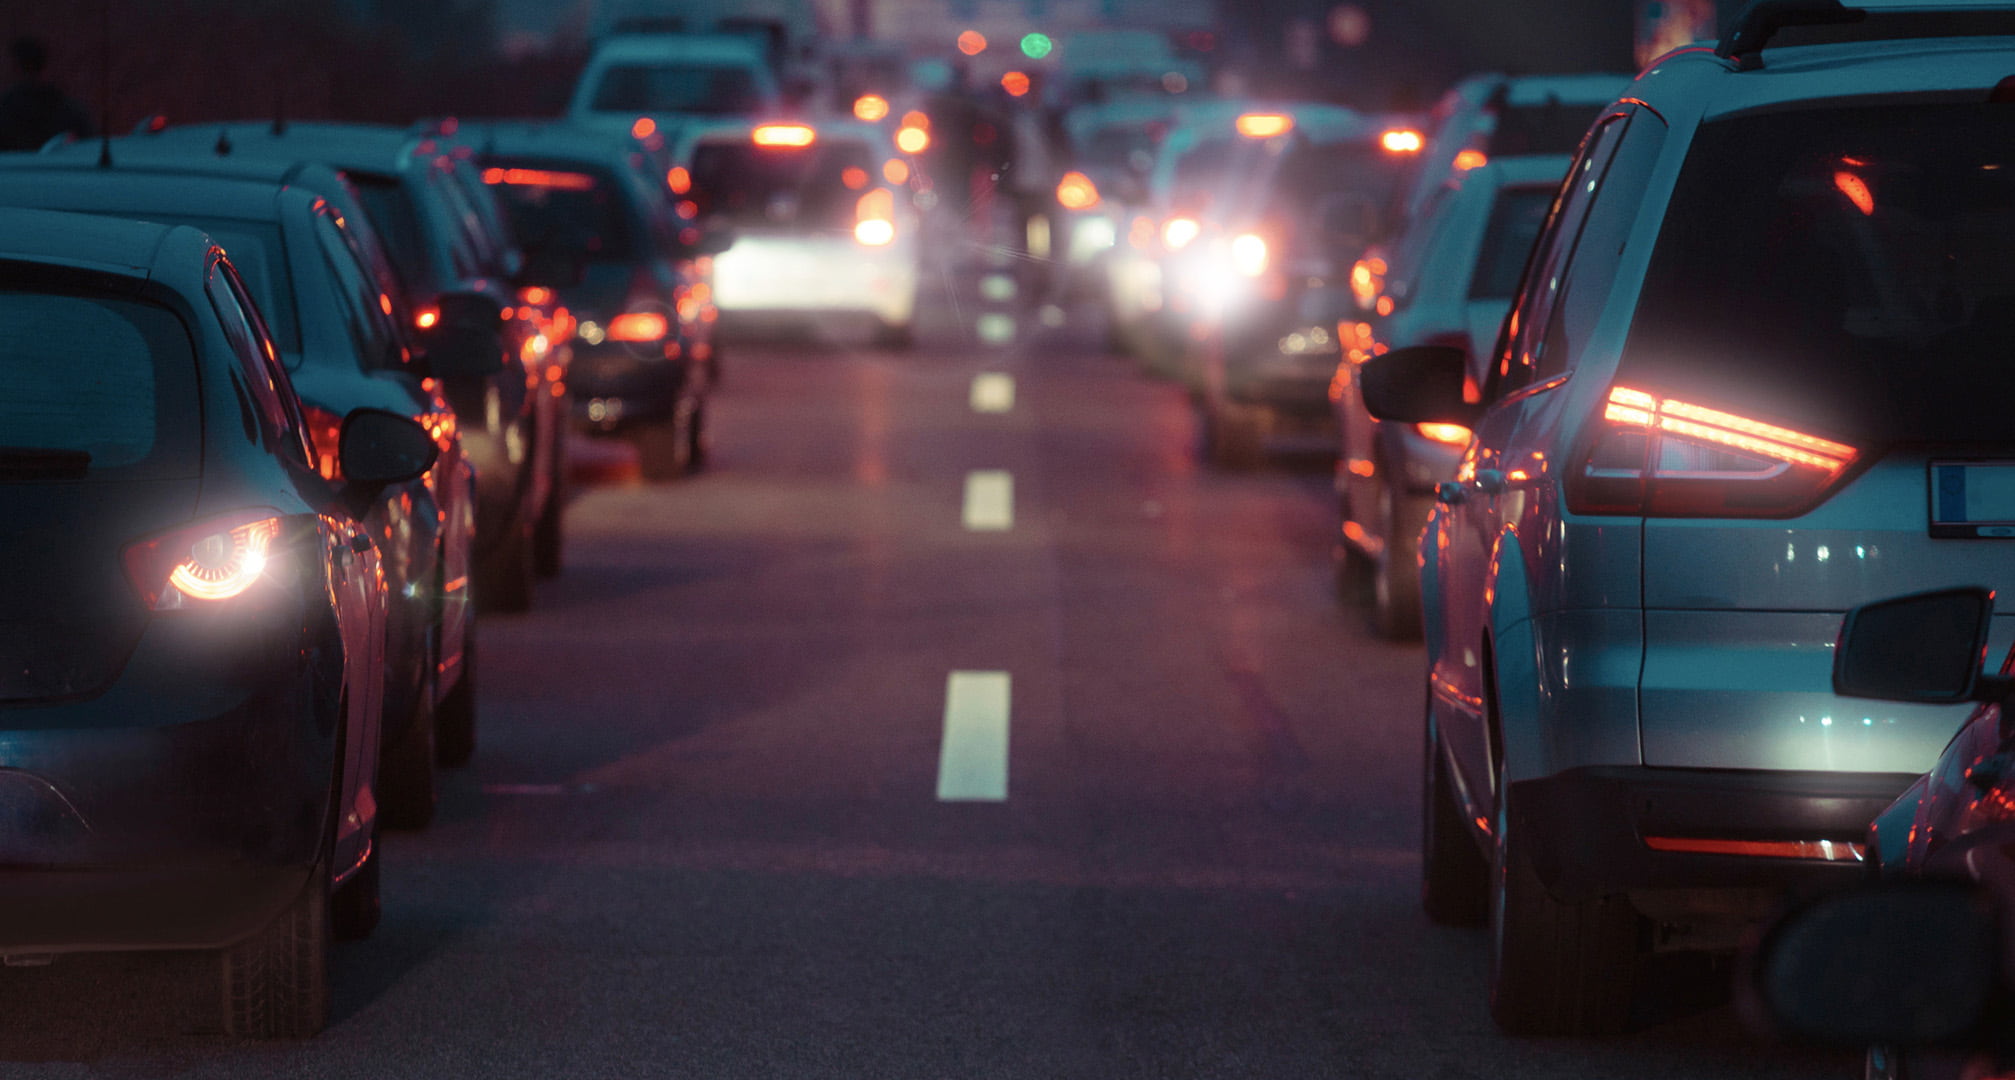 Lichtkränze um die Rücklichter eines Autos bei Nacht, verursacht durch Astigmatismus (links). Klare Auto-Rücklichter bei Nacht, gesehen von einem normalen Auge (rechts).